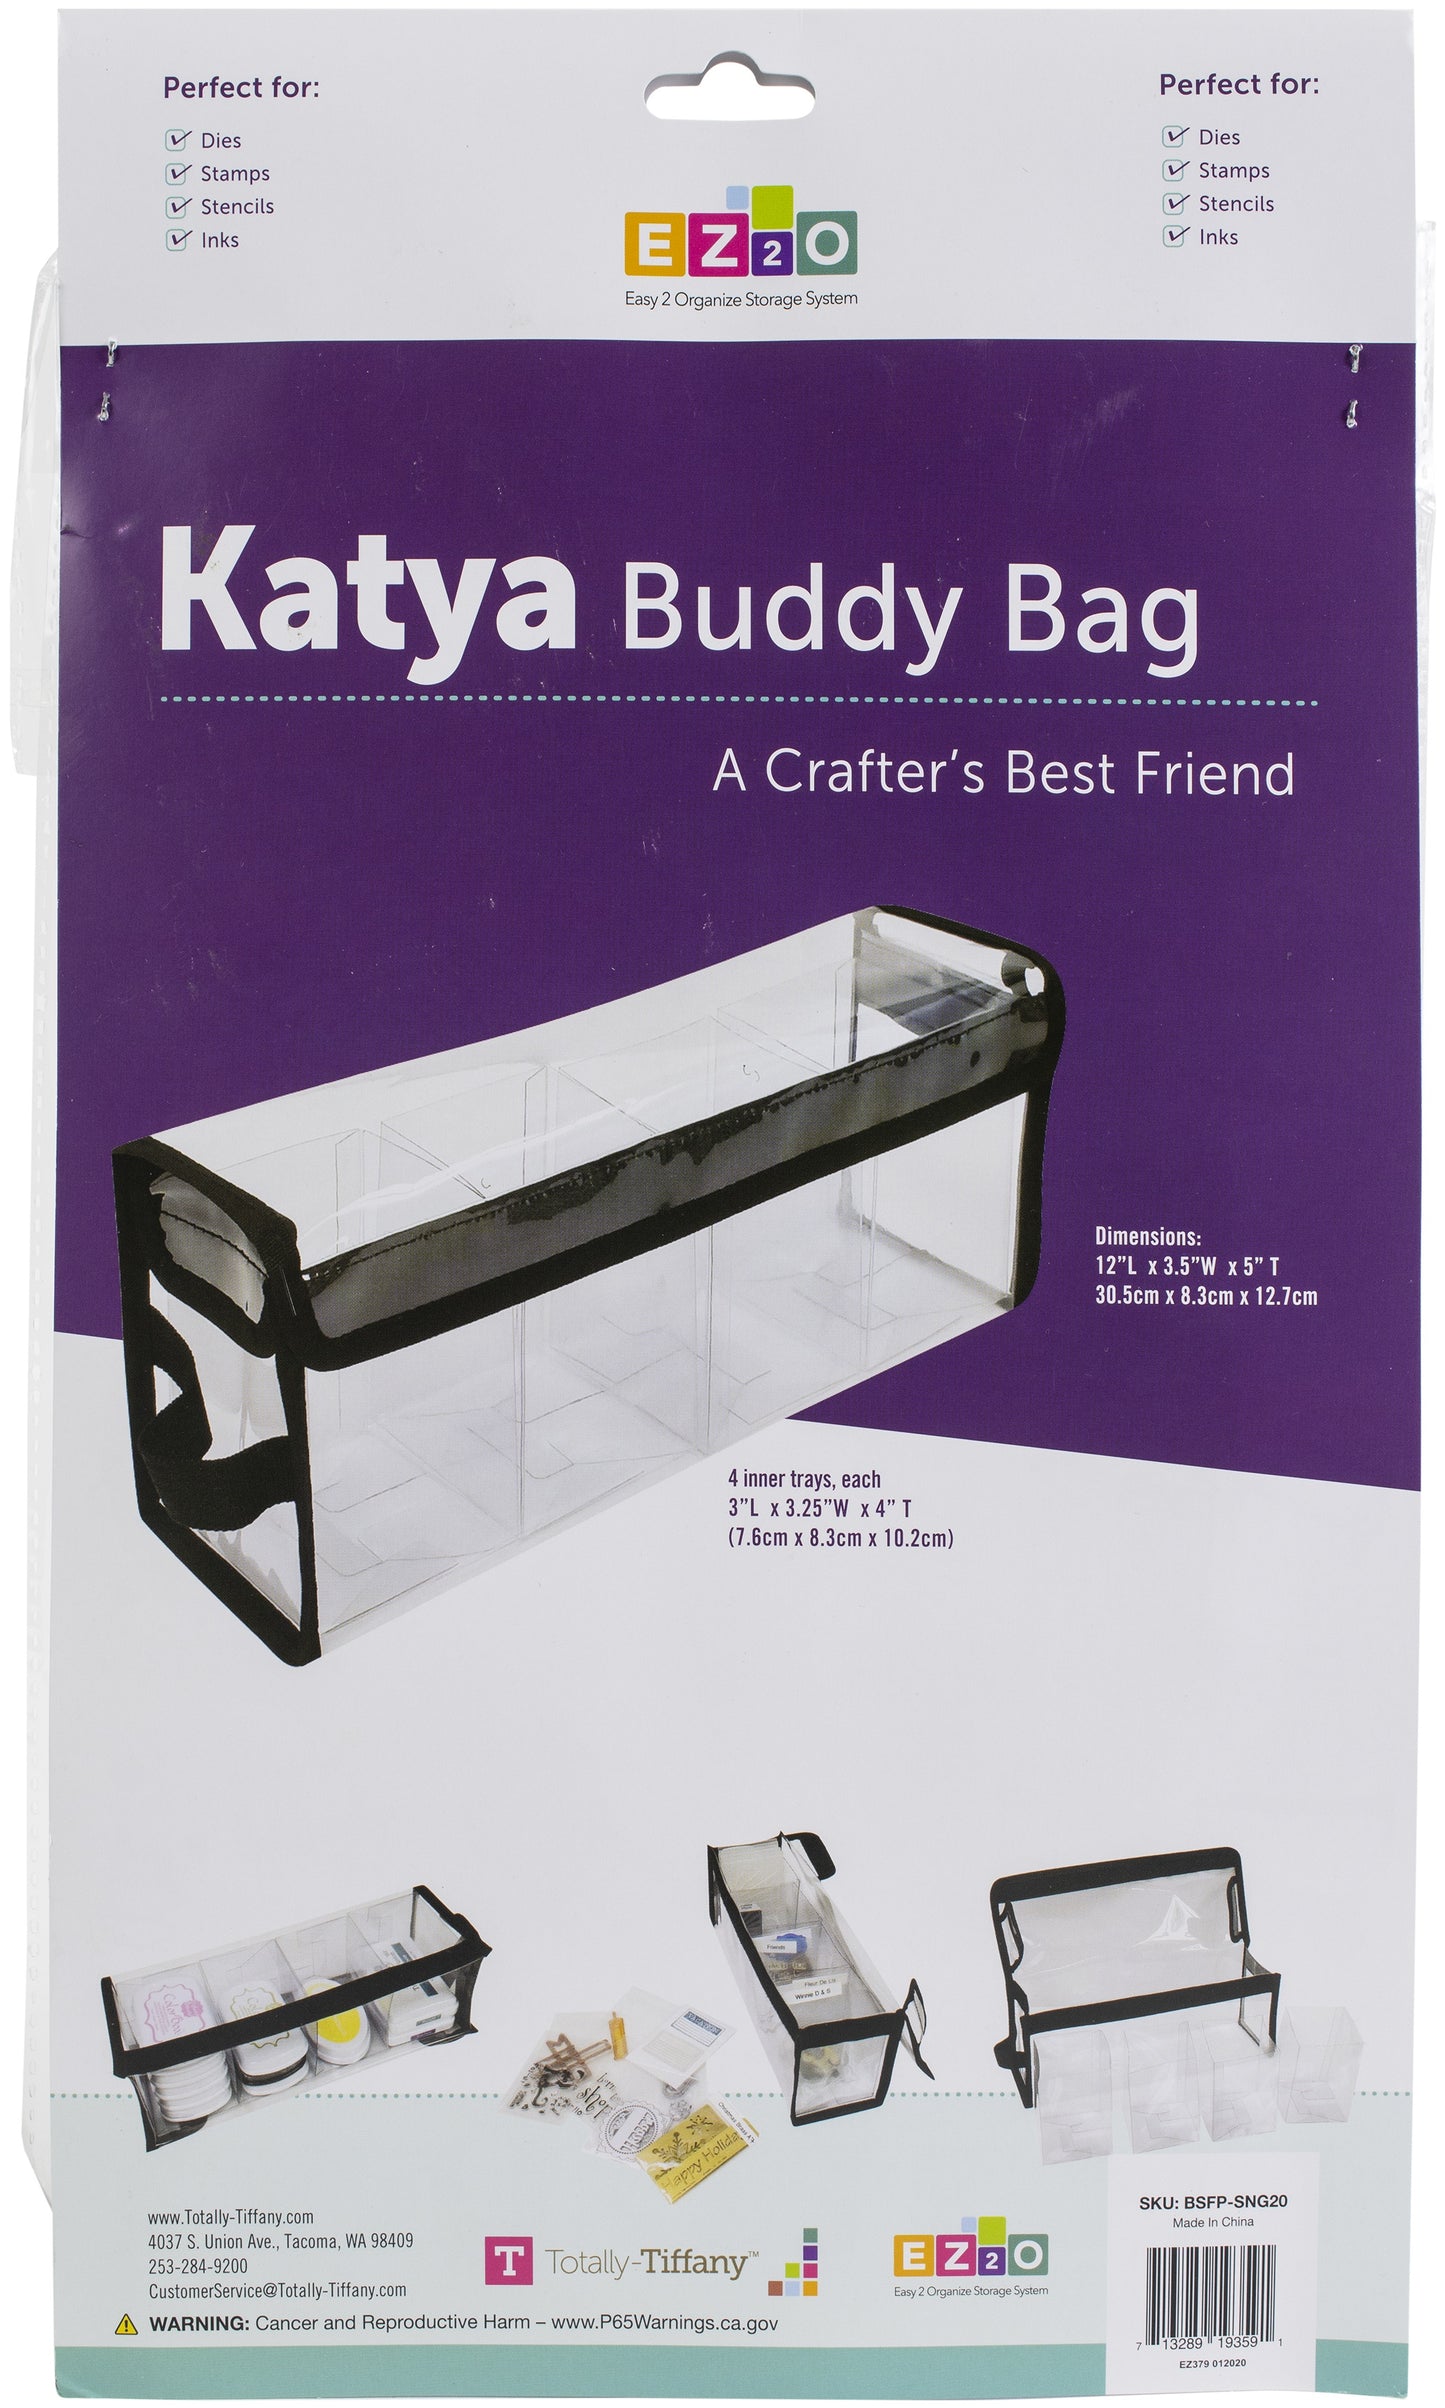 Totally - Tiffany Storage -Easy 2 Organize  Buddy Bag - Katya